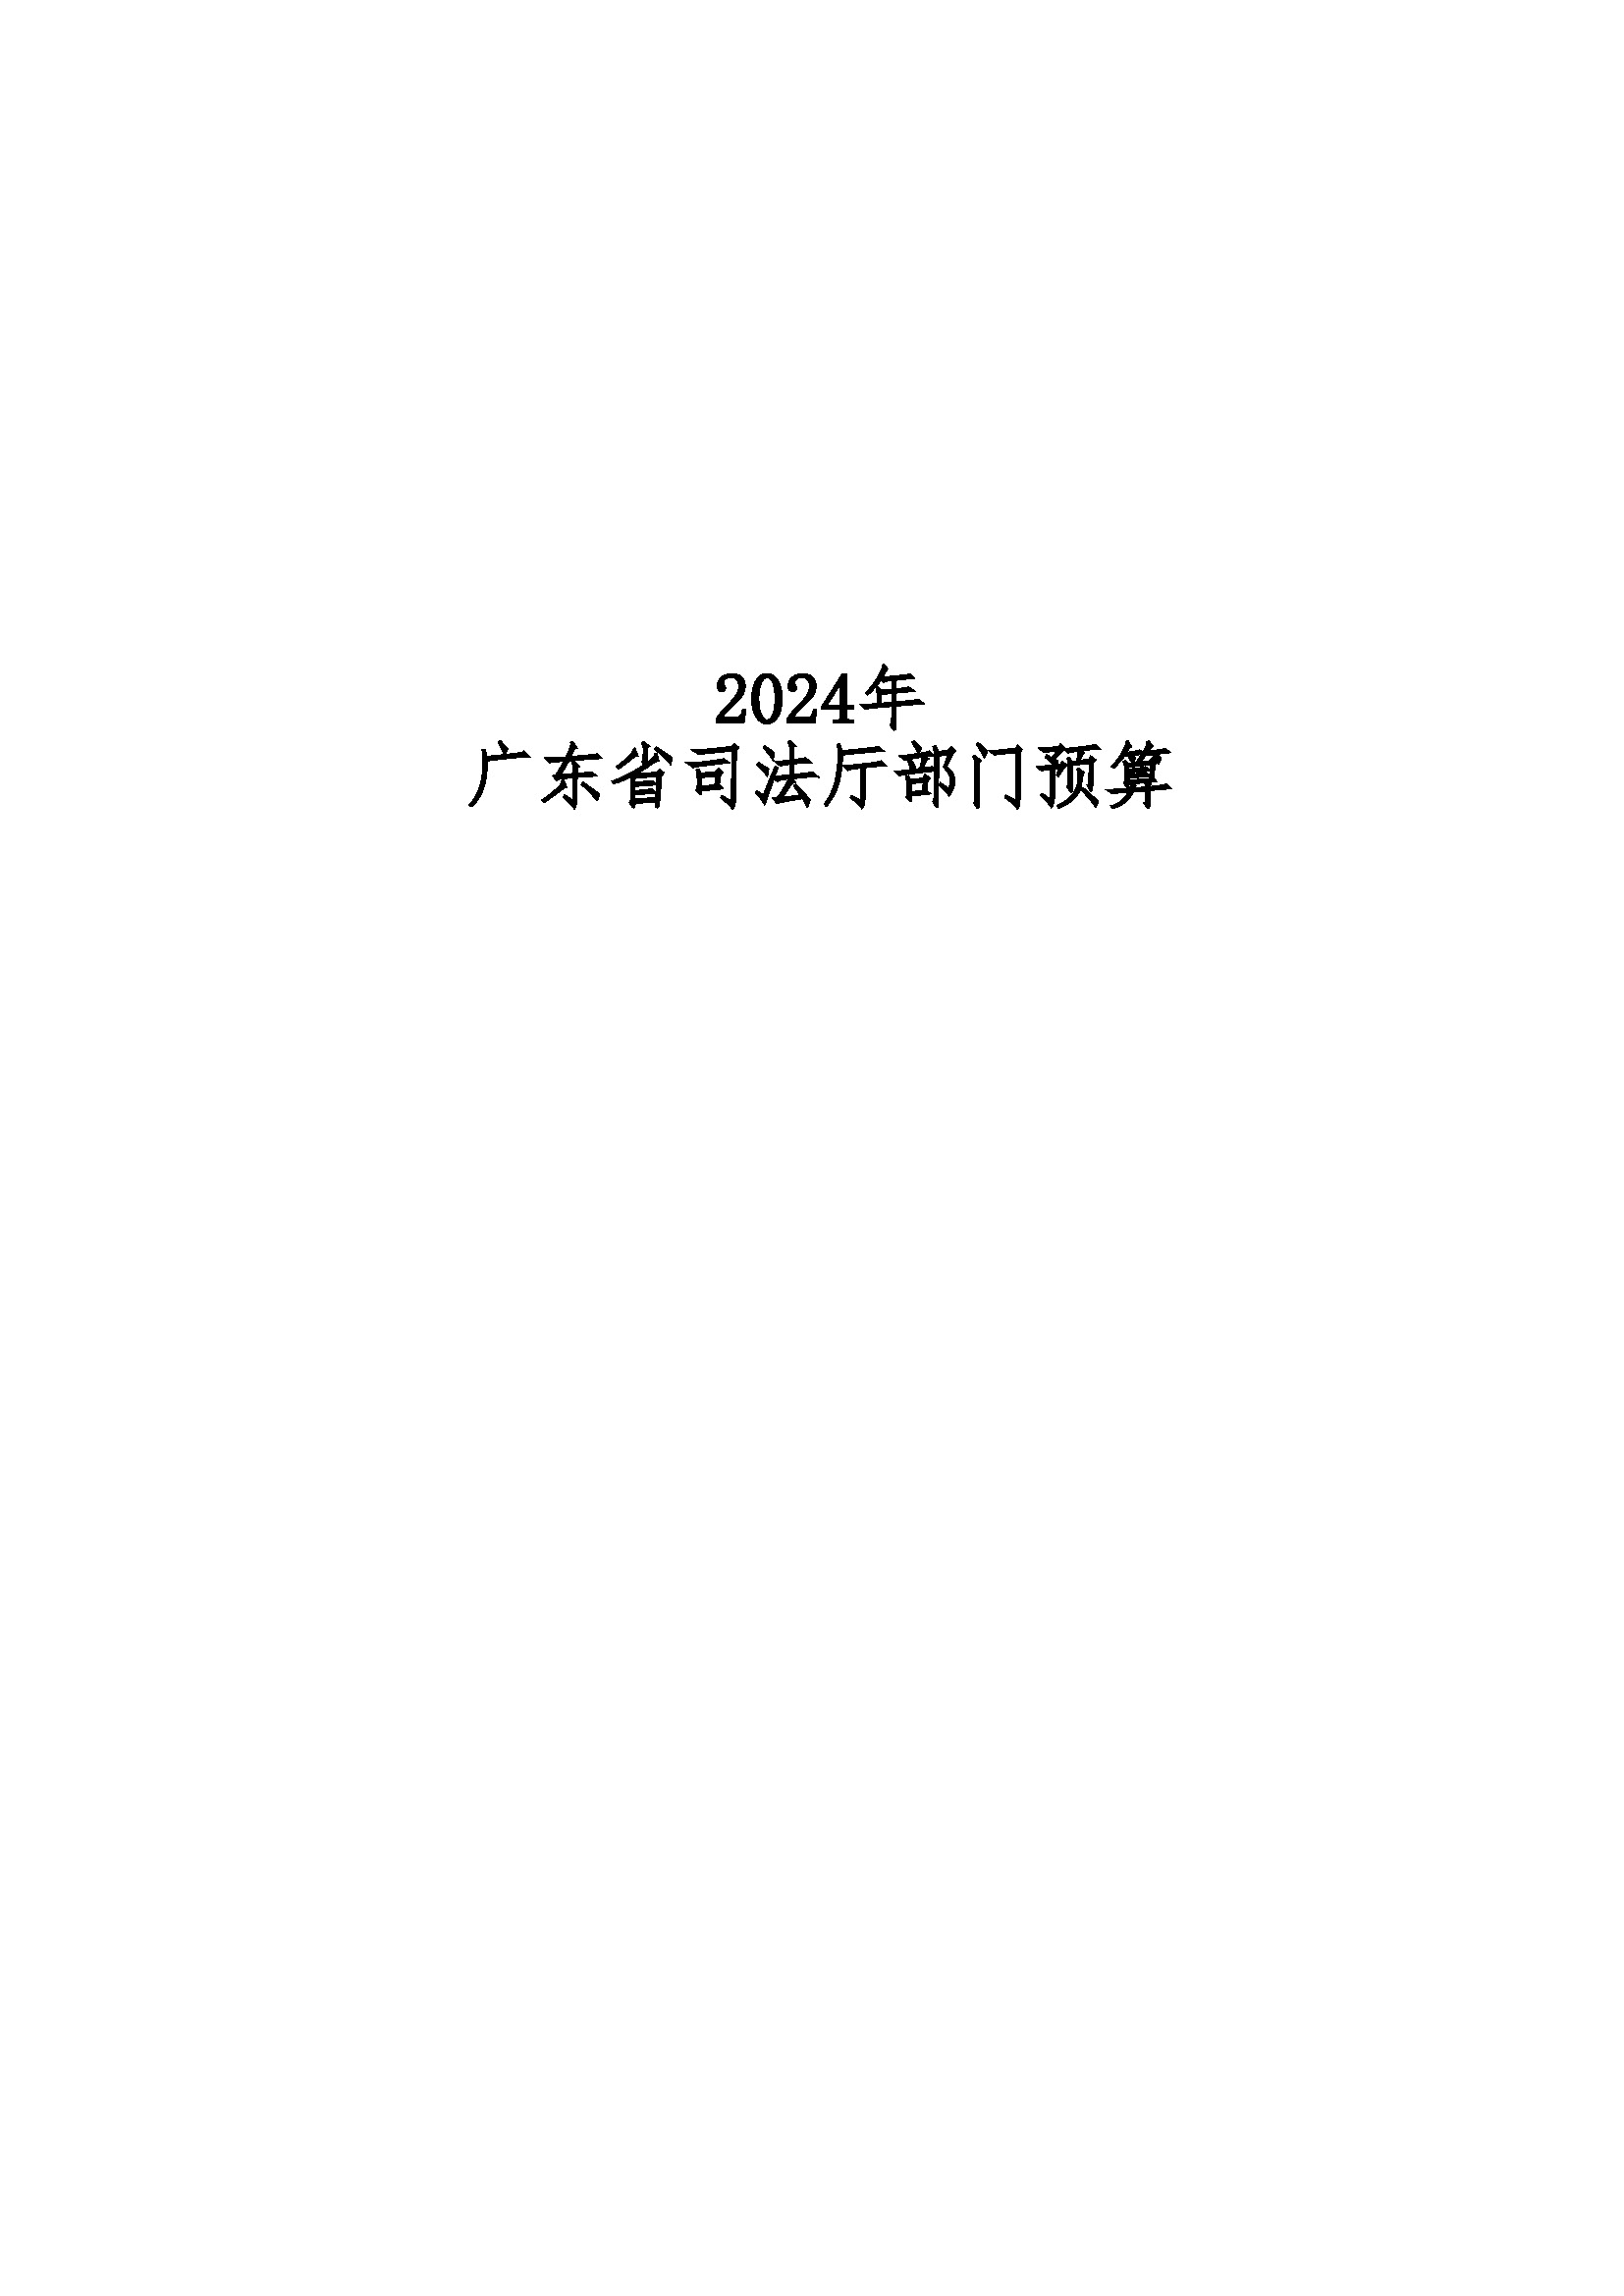 2024年广东省司法厅部门预算_(公开版)(留痕)_页面_01.jpg